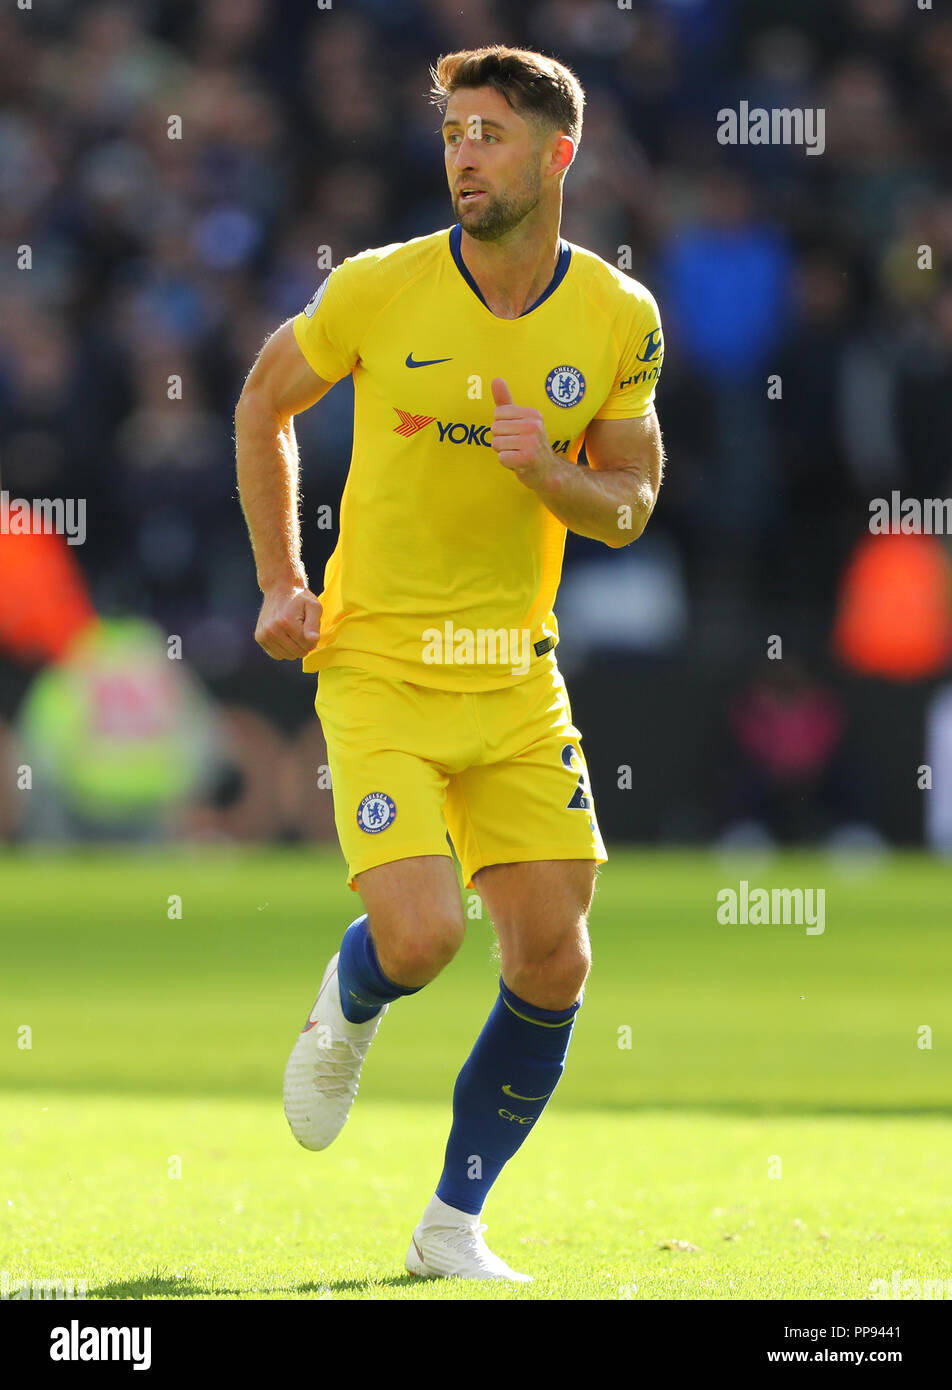 Gary Cahill de Chelsea - West Ham United v Chelsea, Premier League, stade de Londres, Londres (Stratford) - 23 septembre 2018 Banque D'Images